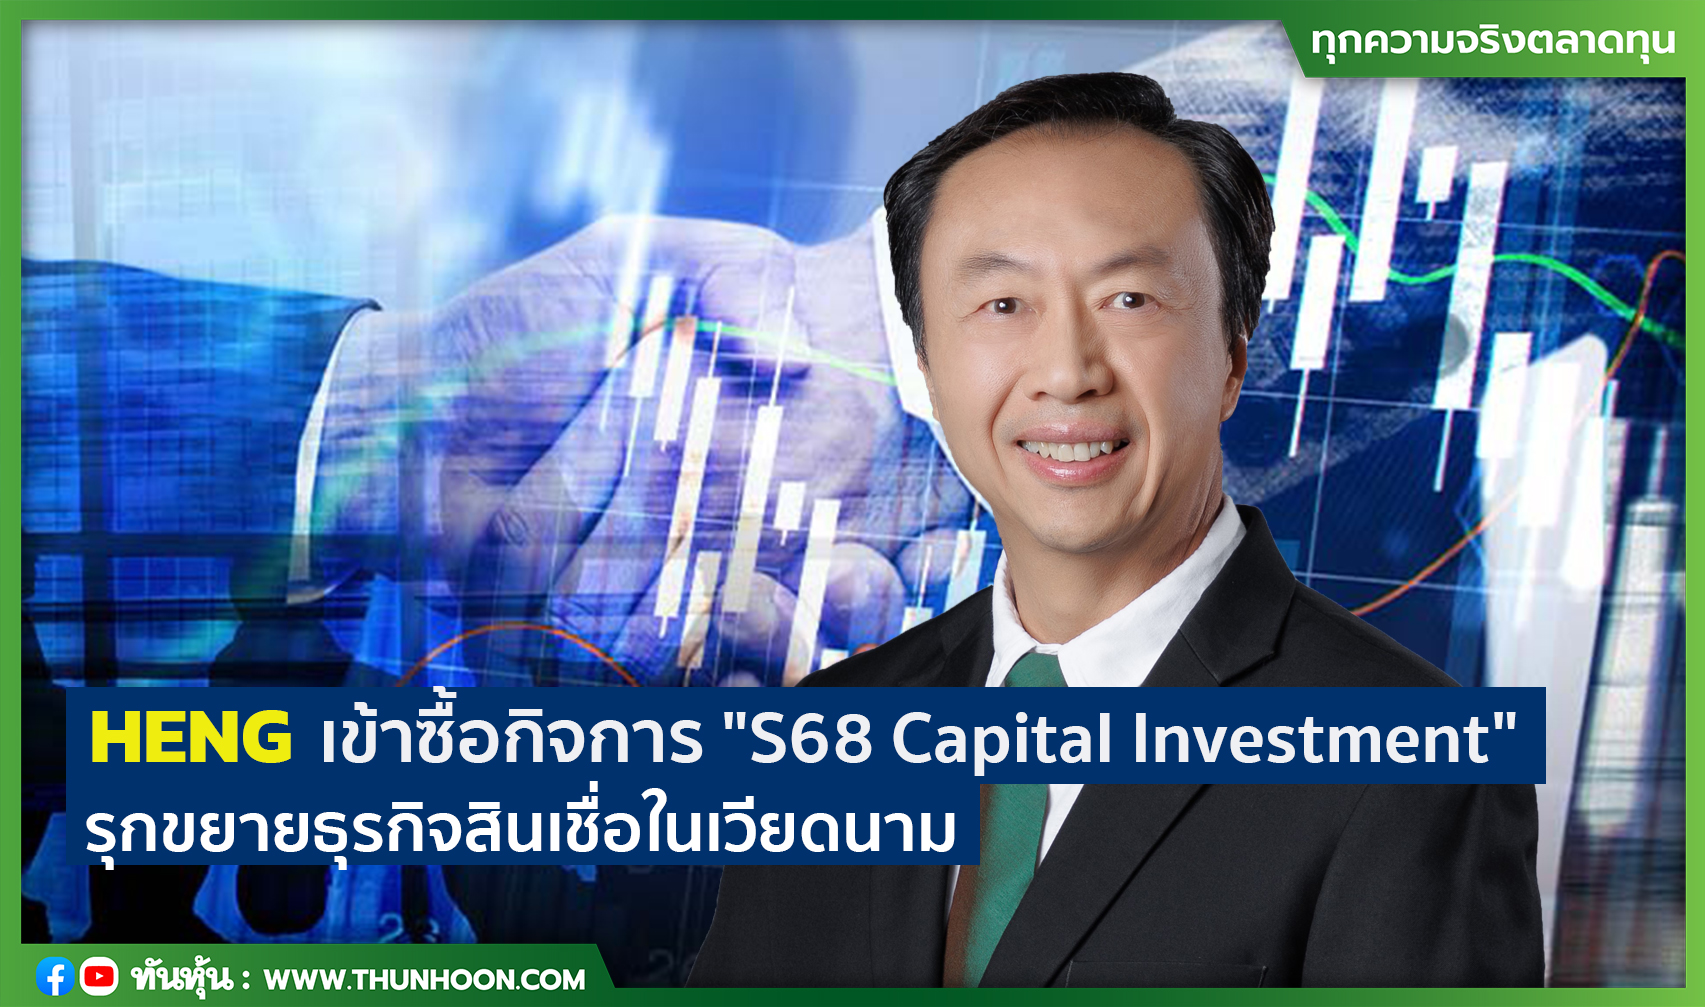 HENG เข้าซื้อกิจการ "S68 Capital Investment" รุกขยายธุรกิจสินเชื่อในเวียดนาม